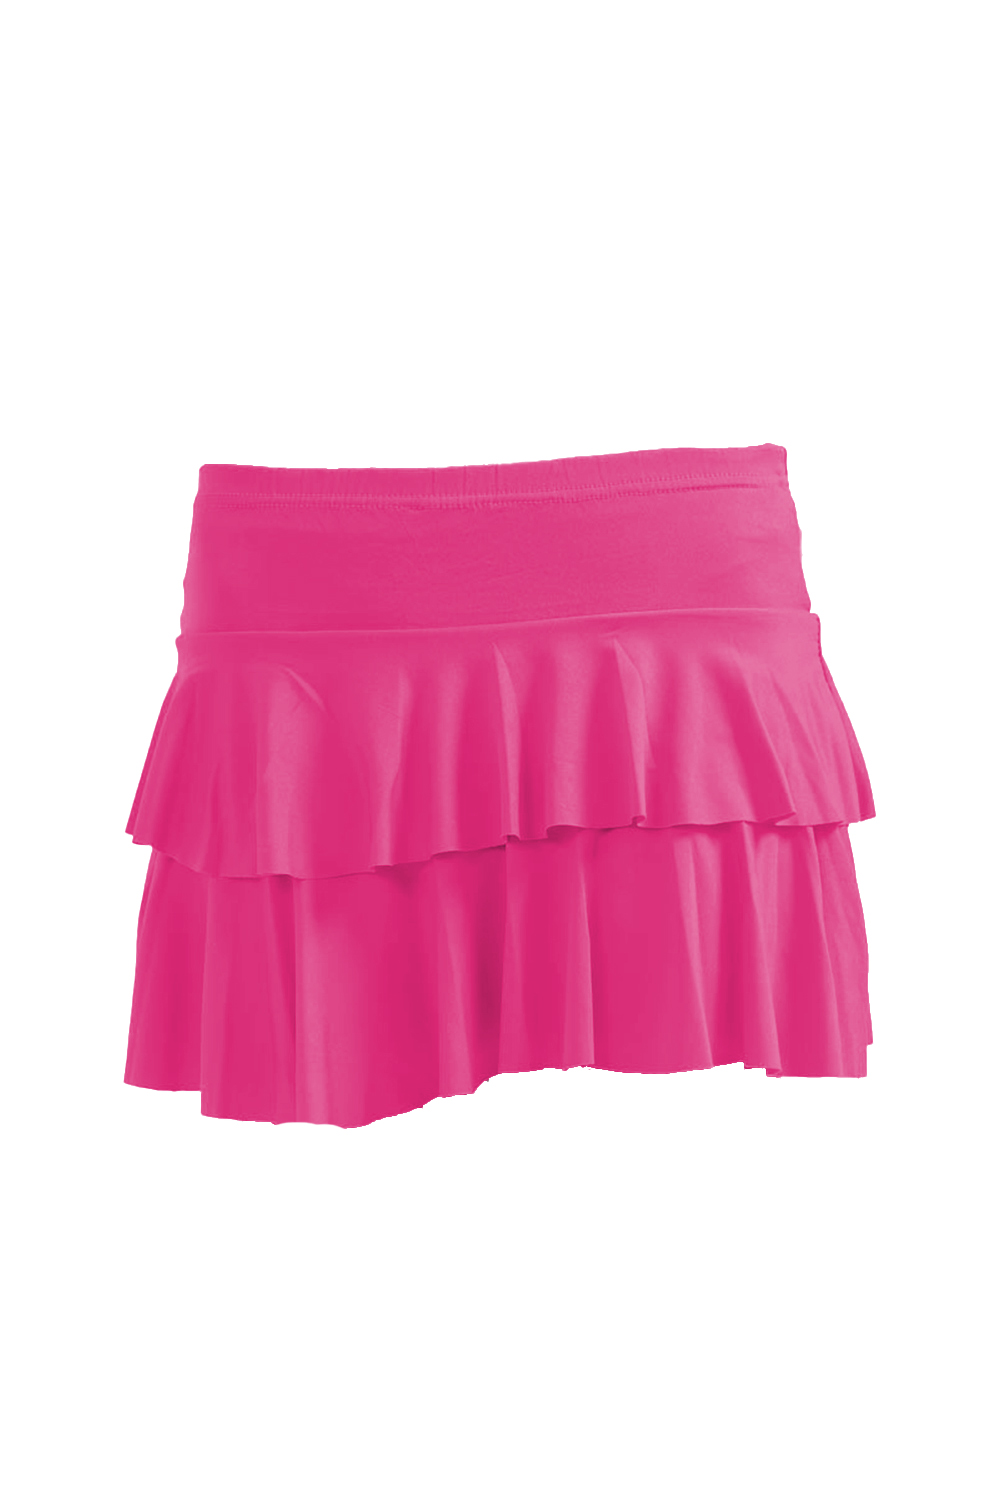 Crazy Chick Adult Hot Pink RARA Skirt